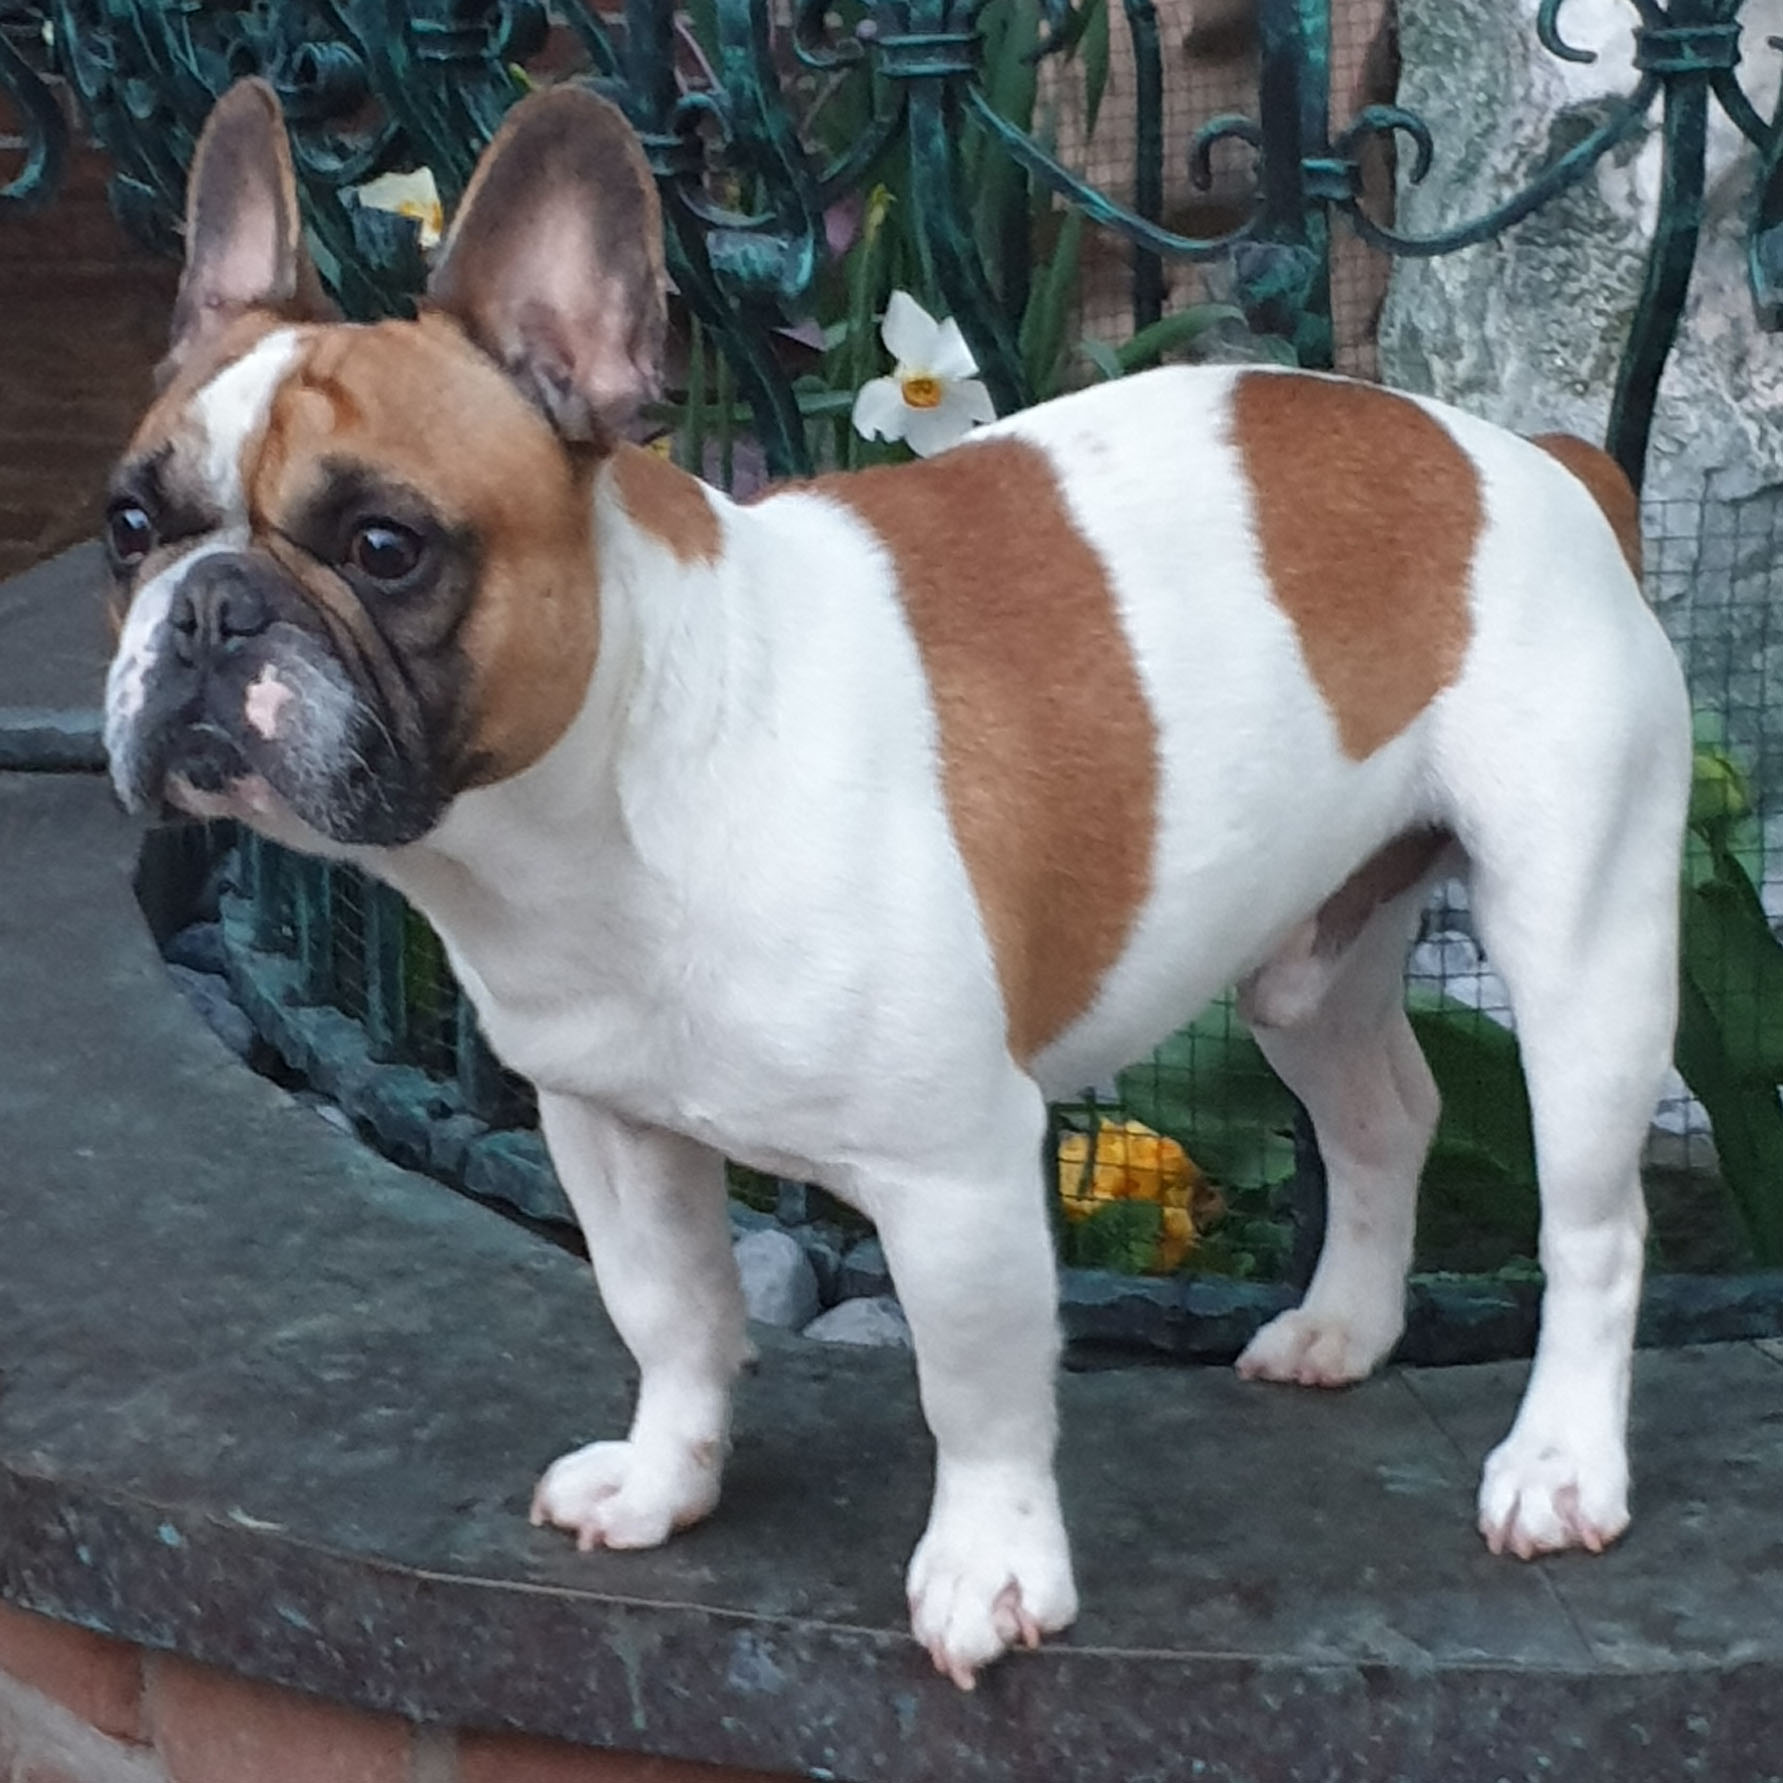 Steckbrief: Französische Bulldogge im Rasseportrait